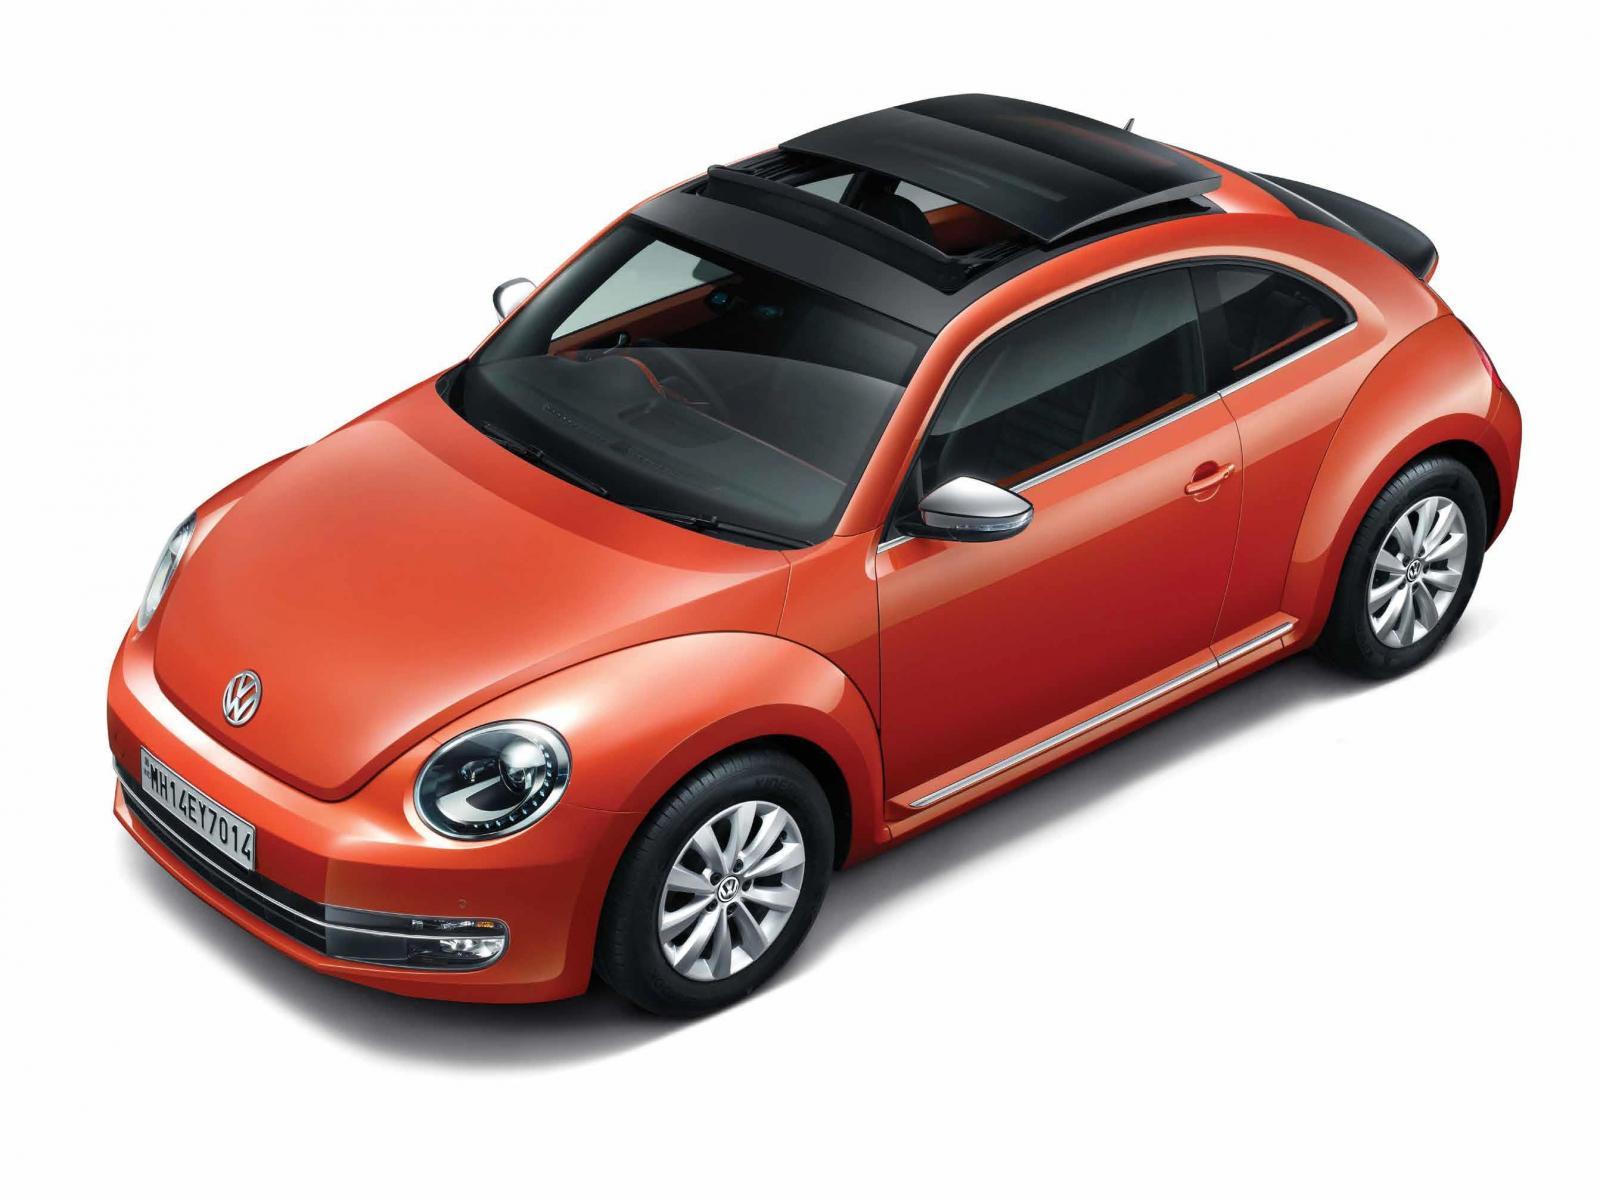 Volkswagen Beetle wallpaper, free download